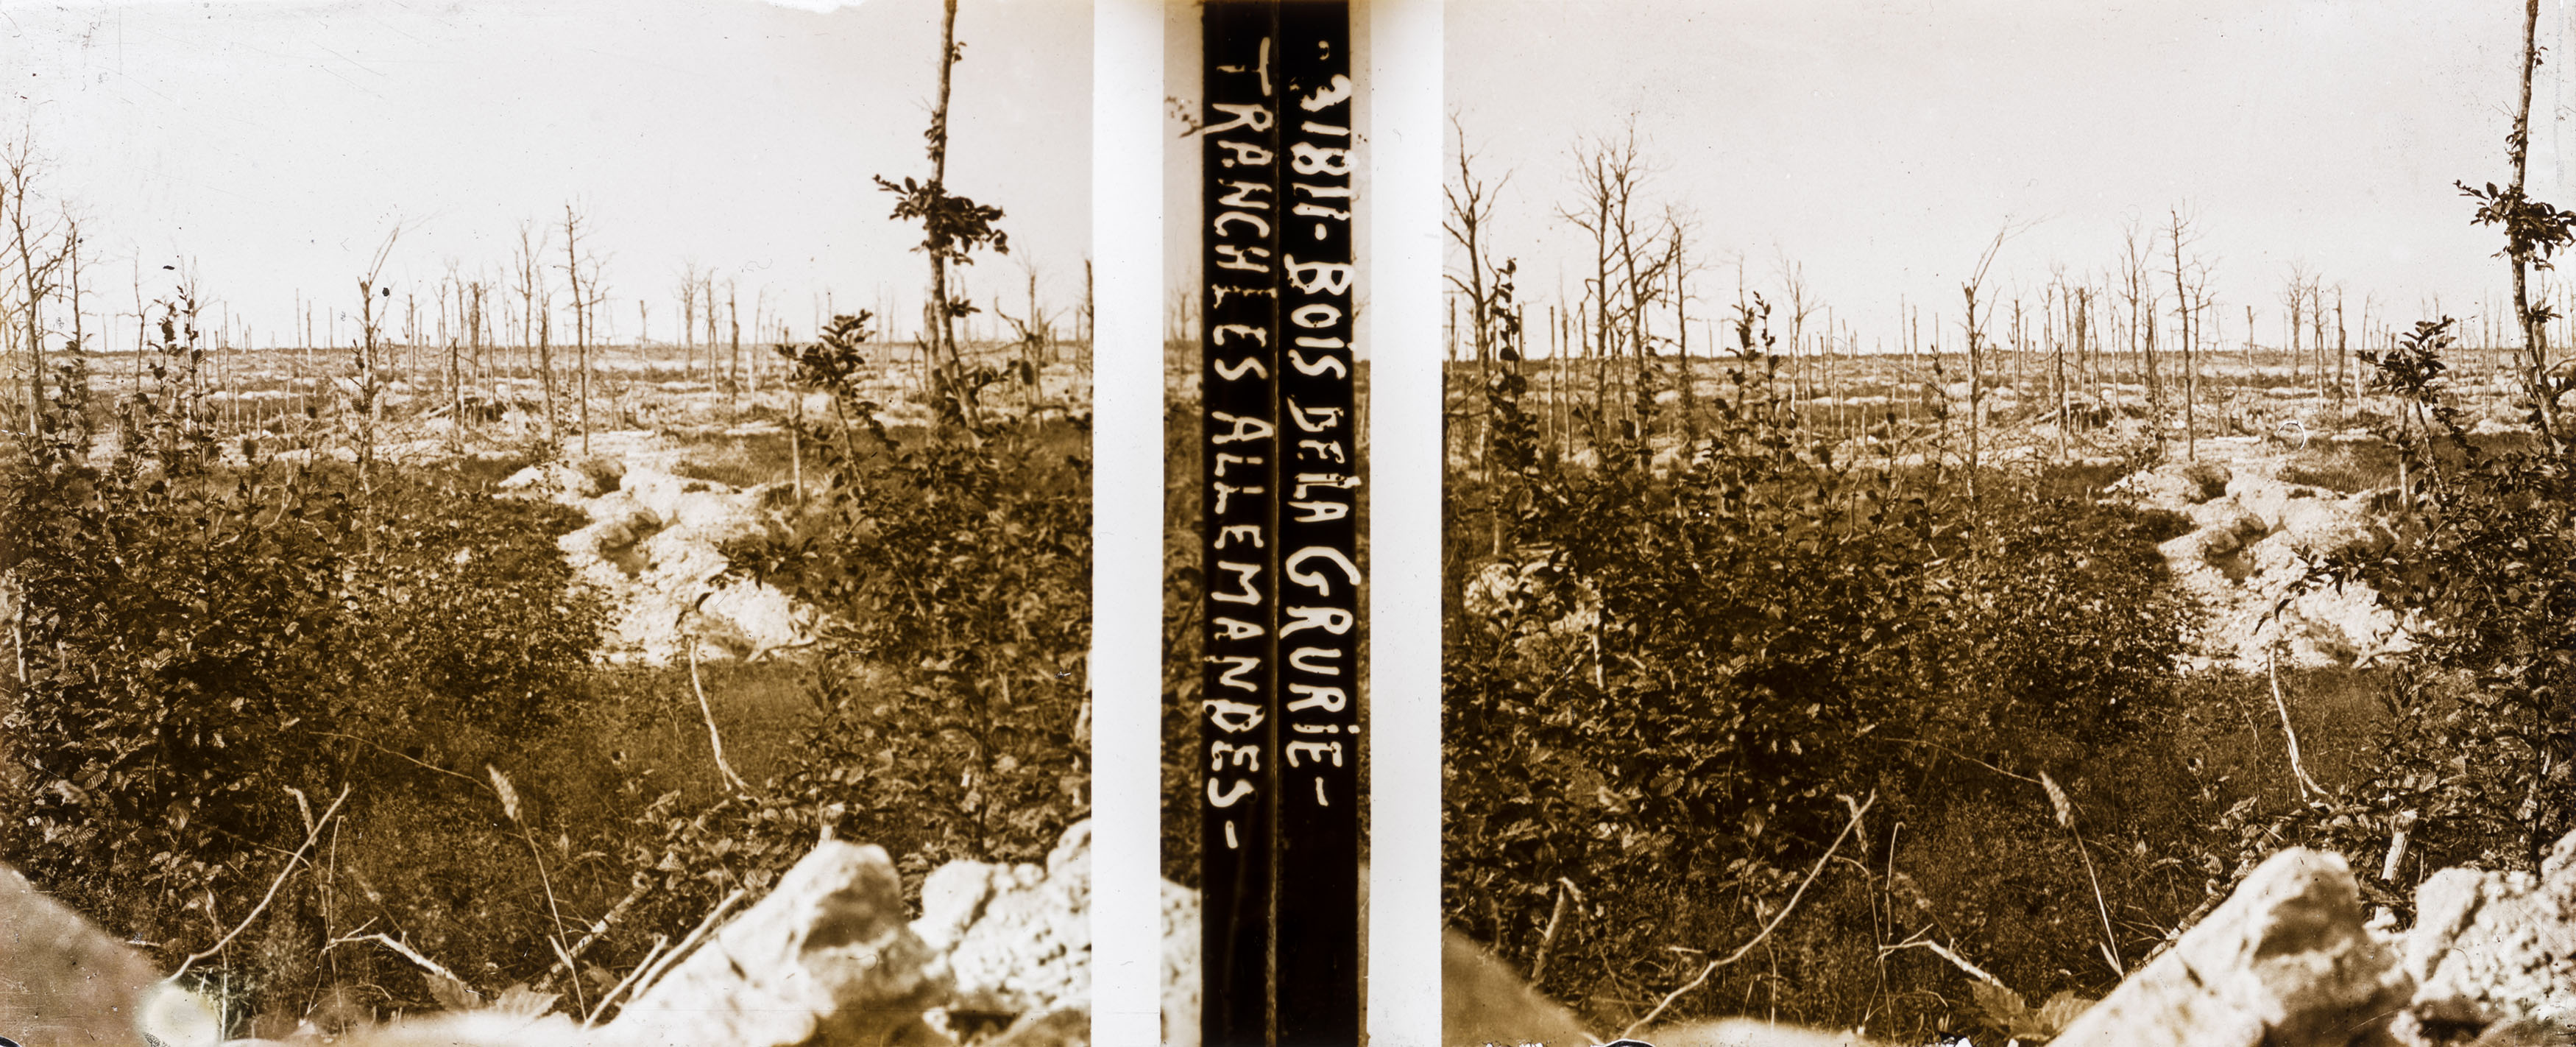 Bois de la Grurie, tranchées allemandes - German trenches at the Bois de la Grurie